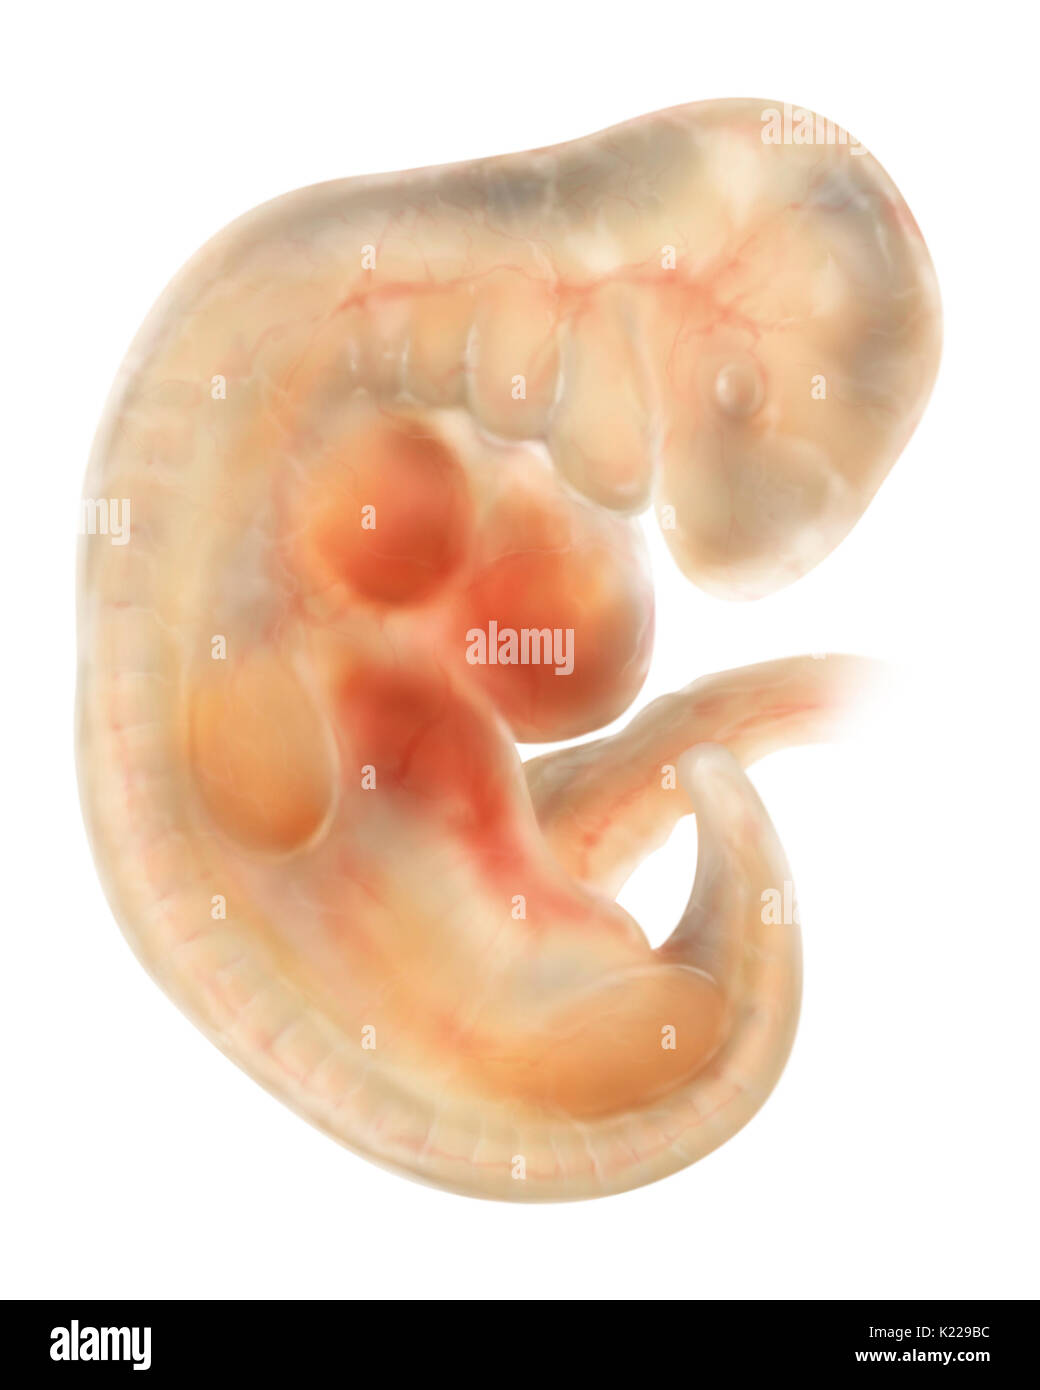 Un embryon de quatre semaines est courbée sous la forme d'un C et mesure environ 3∕16 po (5 mm). Il a les bourgeons des membres et ses lentilles cristallines commencent à se former. Banque D'Images